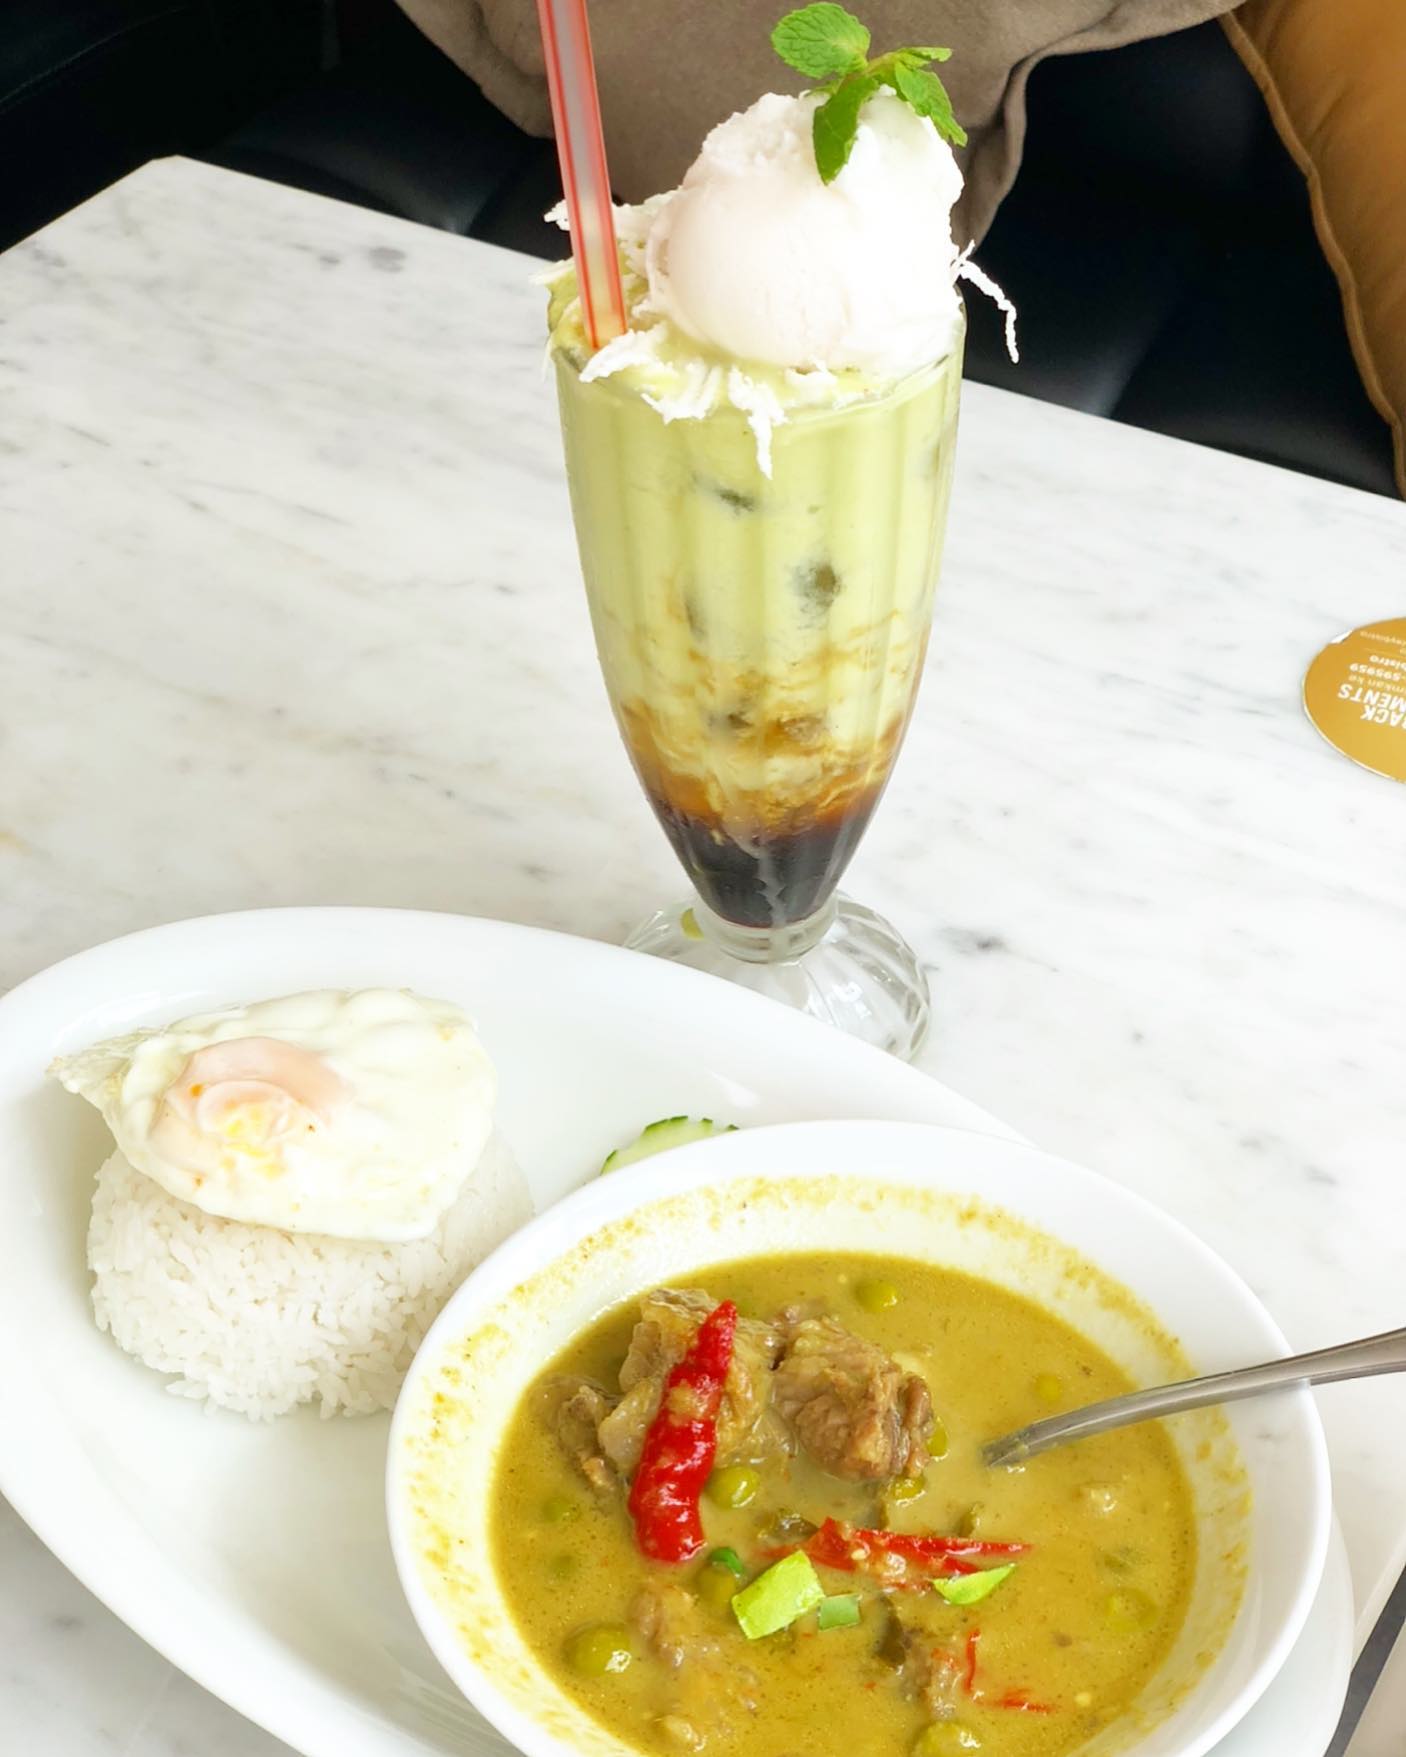 Thai Green Curry dan Avocado Brown Sugar Coconut Sorbet

Inilah makanan khas Thailand yang authentic anda wajib coba